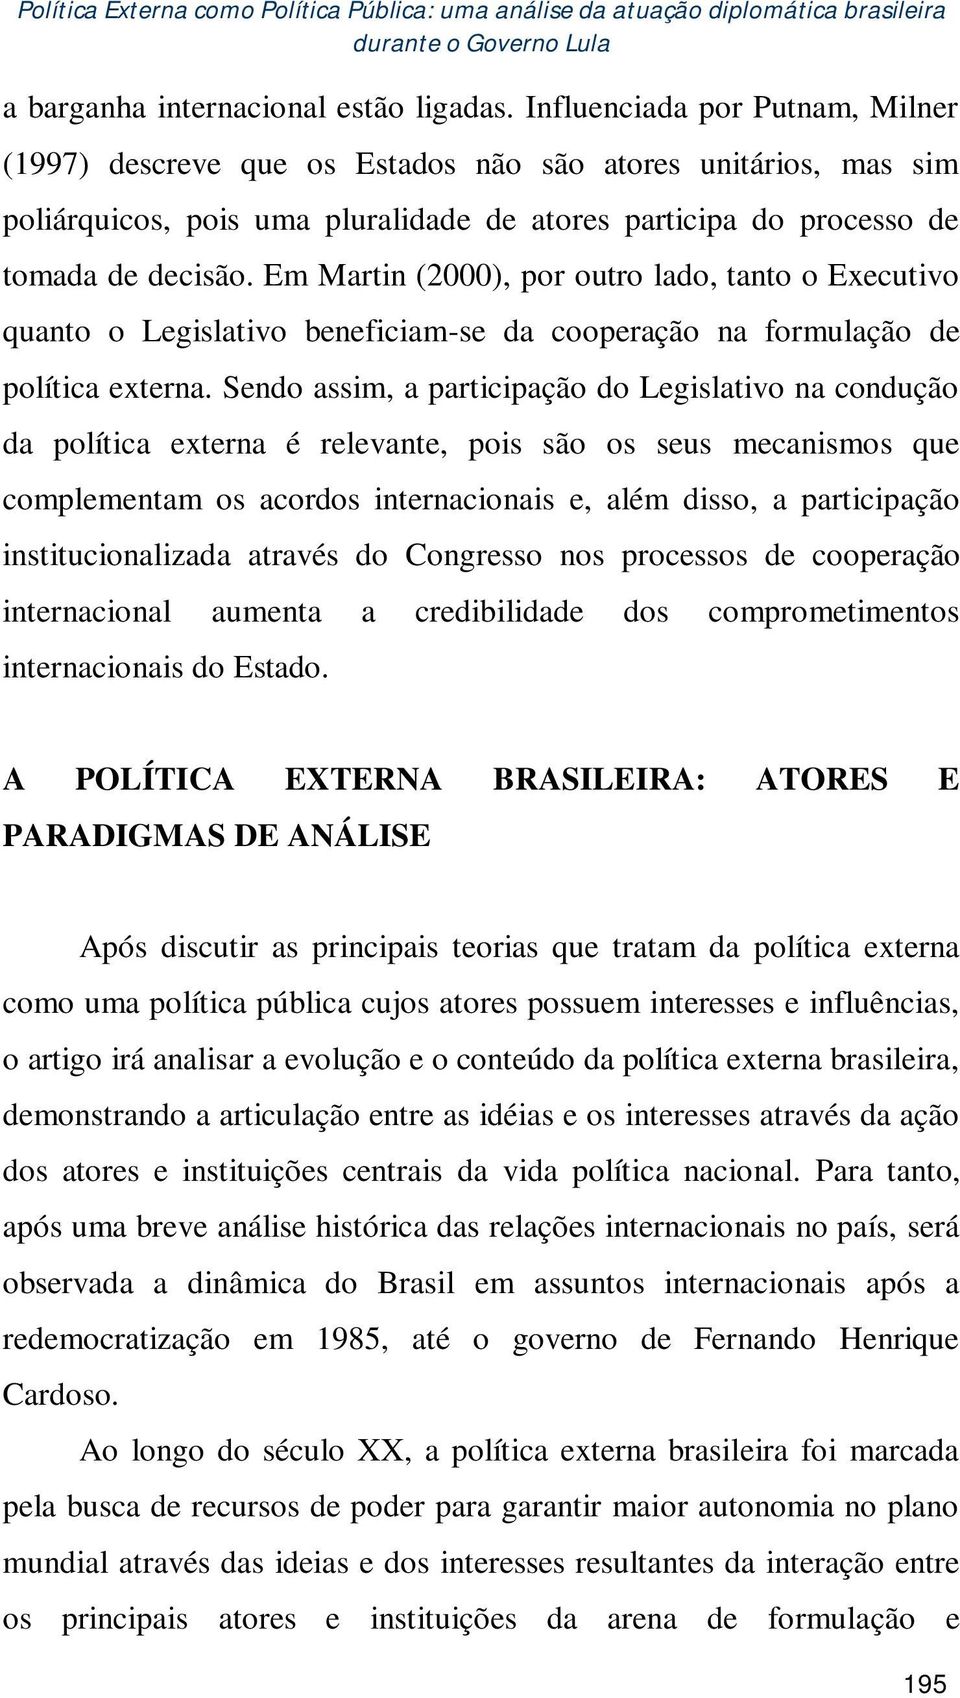 Em Martin (2000), por outro lado, tanto o Executivo quanto o Legislativo beneficiam-se da cooperação na formulação de política externa.